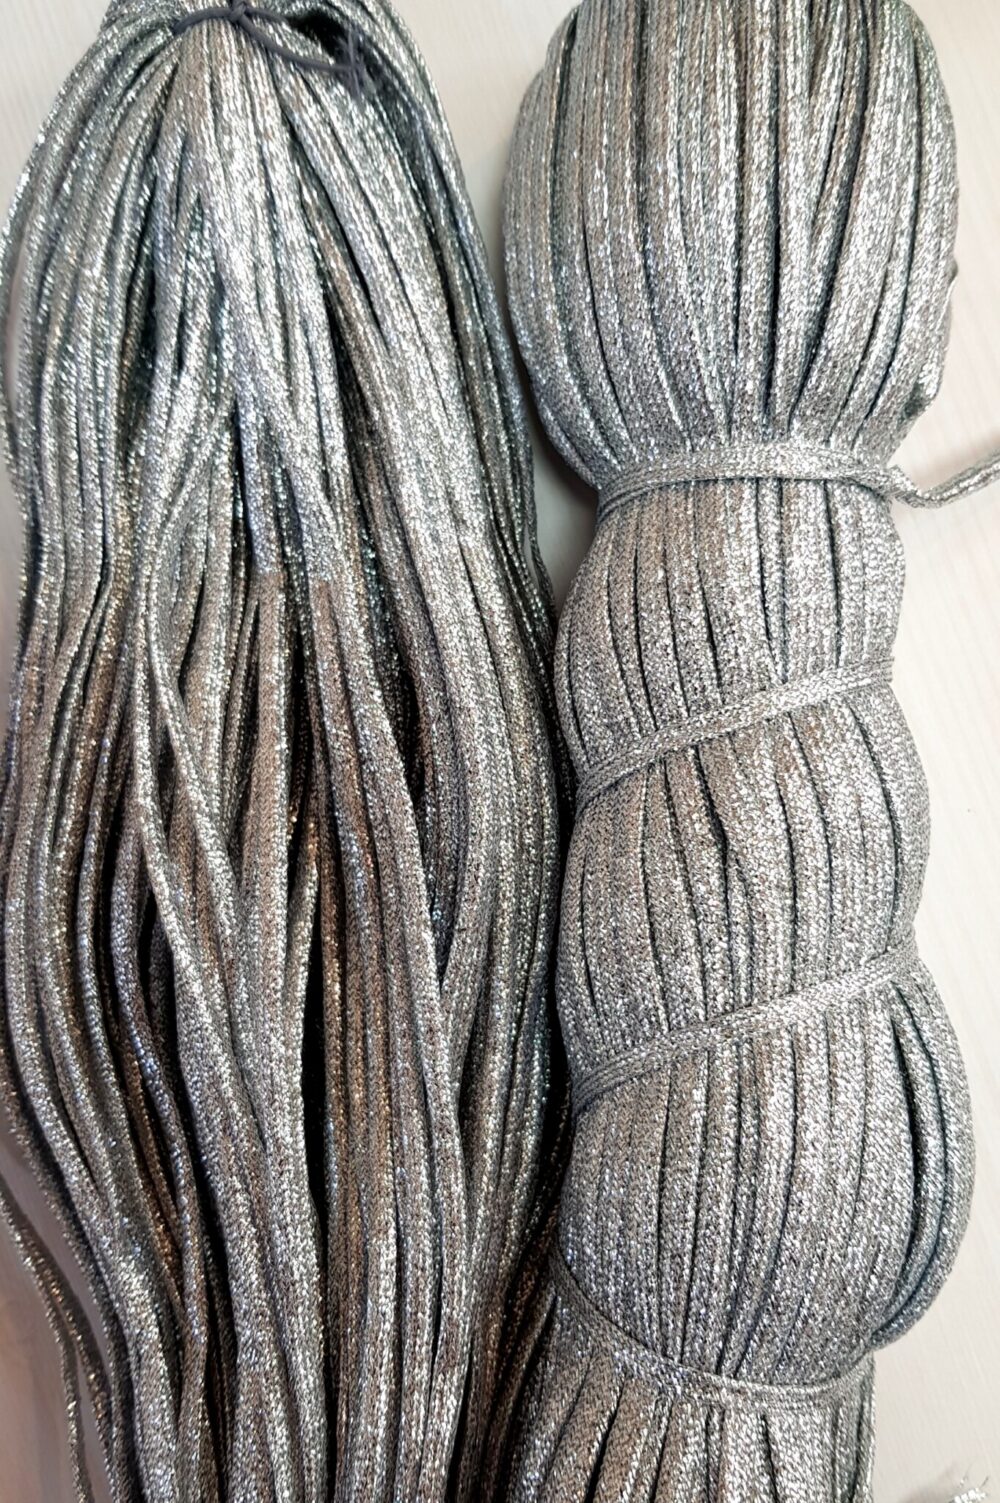 metalizuota juostele scaled - Siulų dama - siūlai mezgėjoms megzti kojines megztinius šalikus šalikas megztinis siūlų parduotuvė pigiausi siūlai geriausi pasiūlymai nemokama registracija - Siūlų Dama - SIŪLAI INTERNETU - Mezgimo priemonės - IŠPARDUOTUVĖ 🧶 Siūlų Dama - tai mūsų DIDŽIAUSIA tavo mėgstamiausių siūlų bei mezgimo priemonių parduotuvė interente. Drops Phildar KnitPro Lana Gatto https://siuludama.lt MET-jusotele